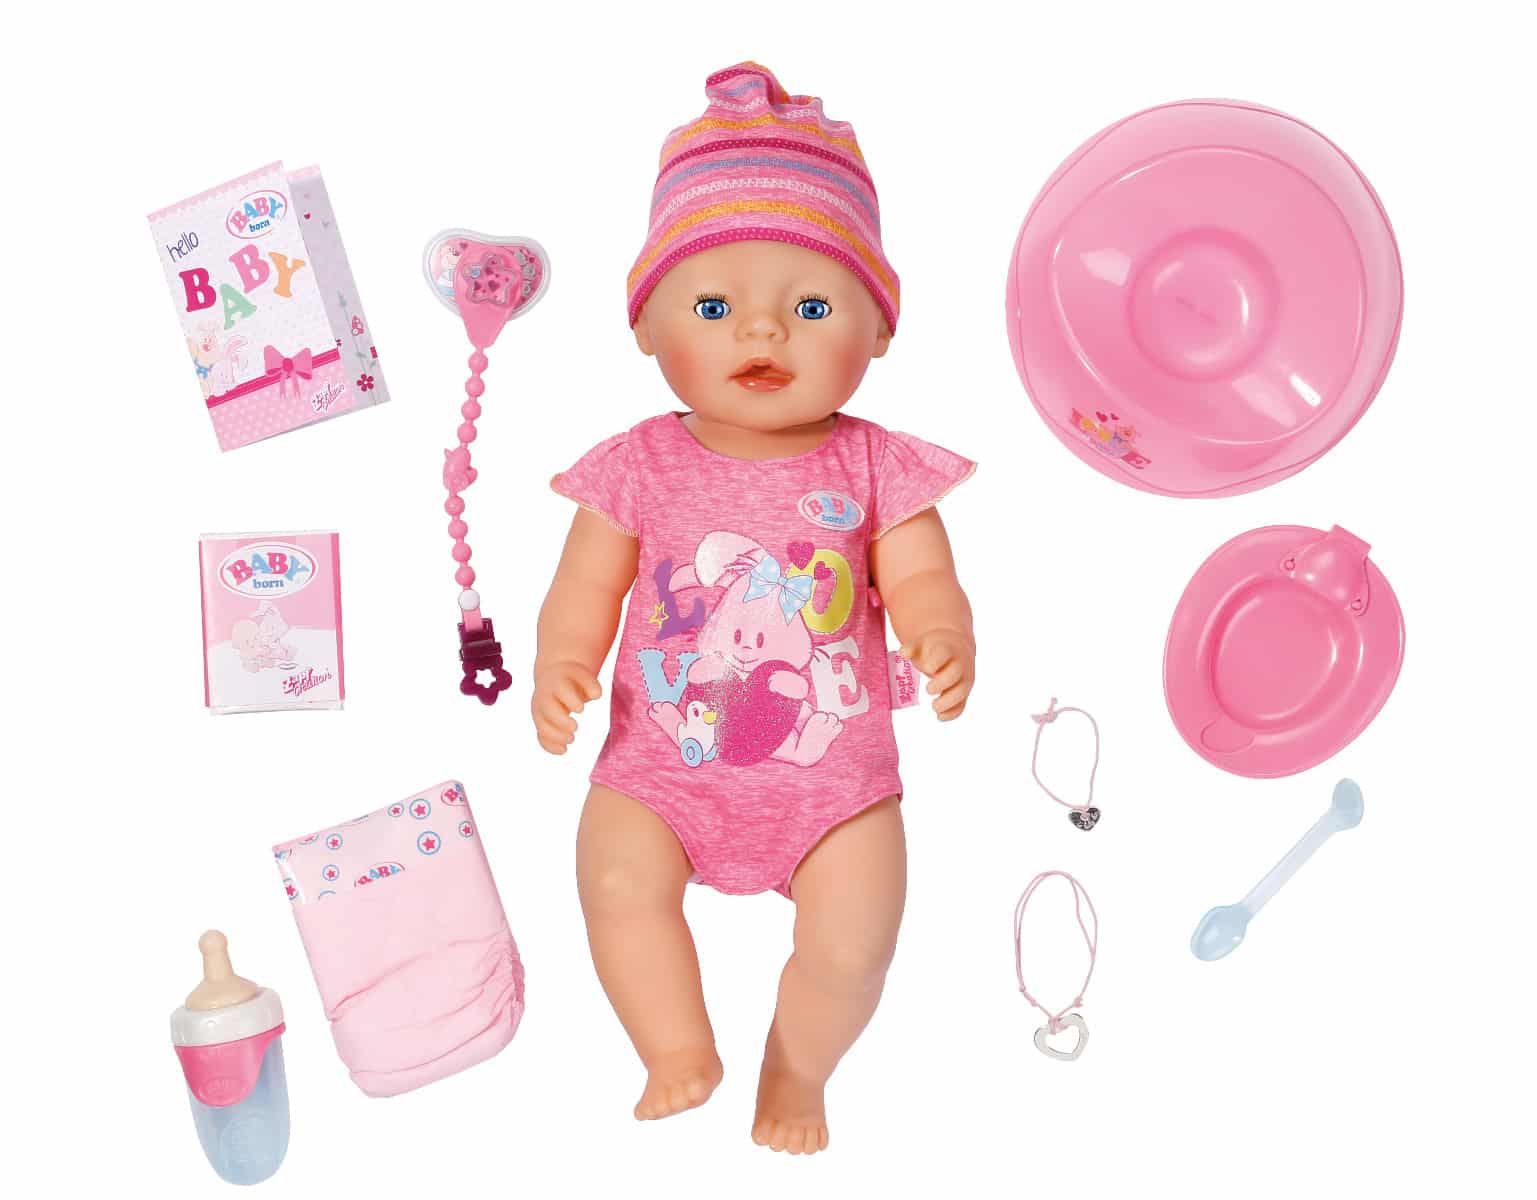 Baby Born Soft Touch tyttö. Interaktiivinen Baby born -nukke on jokaisen tytön lahjatoive. Nukkea voi kylvettää, juottaa ja syöttää.